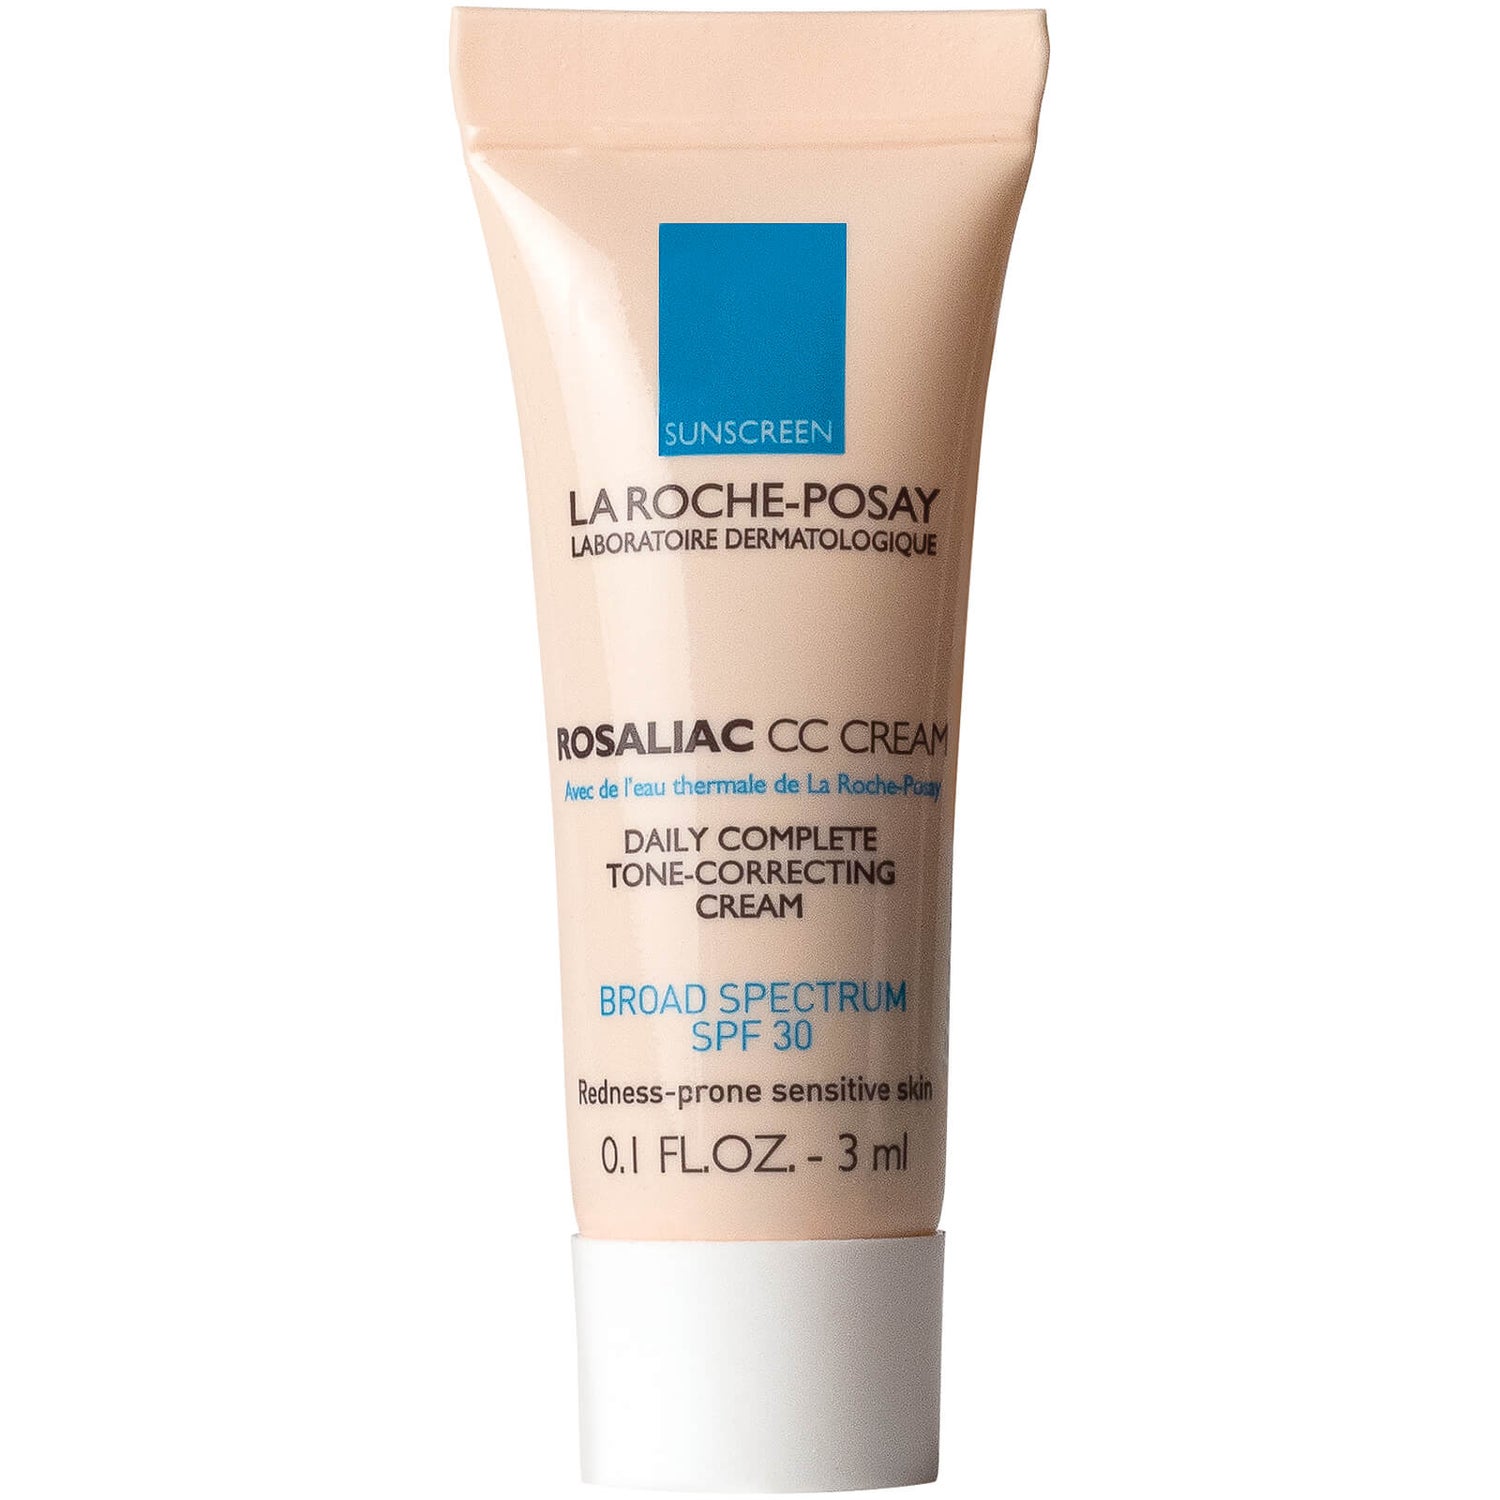 La Roche-Posay CC Cream Deluxe Sample 3ml $10.00) | SkinStore